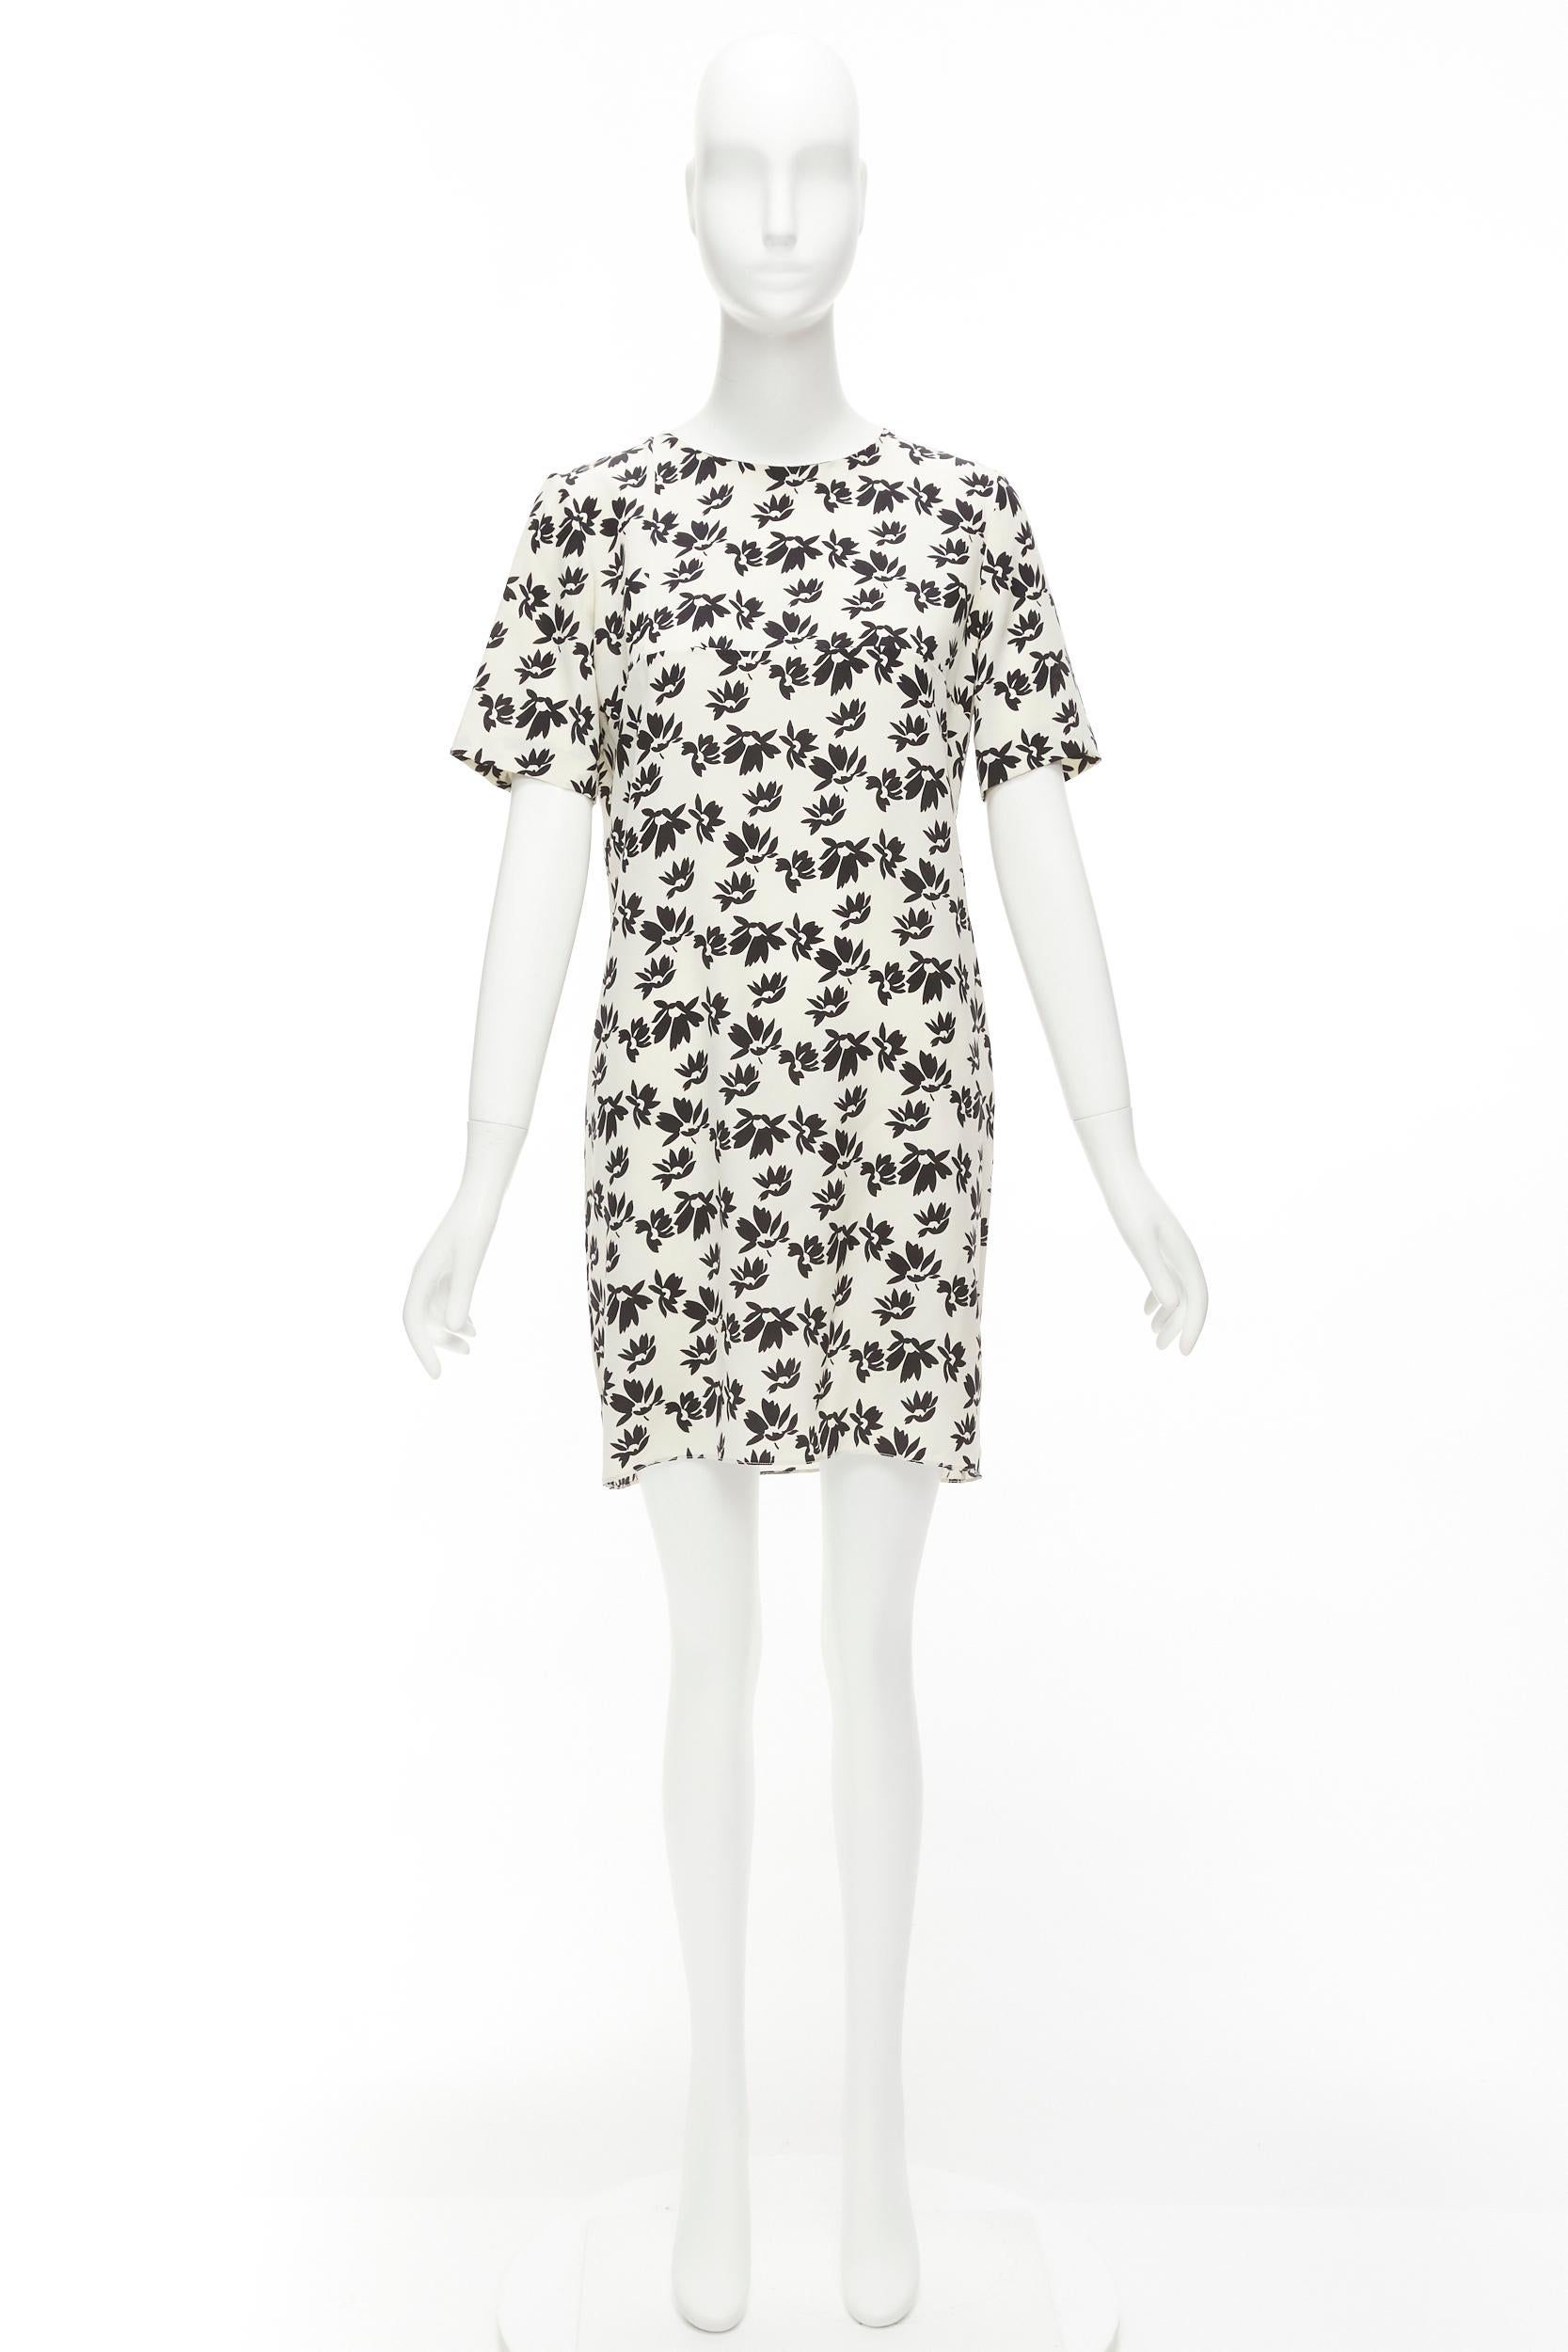 MARNI white black floral print asymmetric panel dress IT42 M For Sale 5